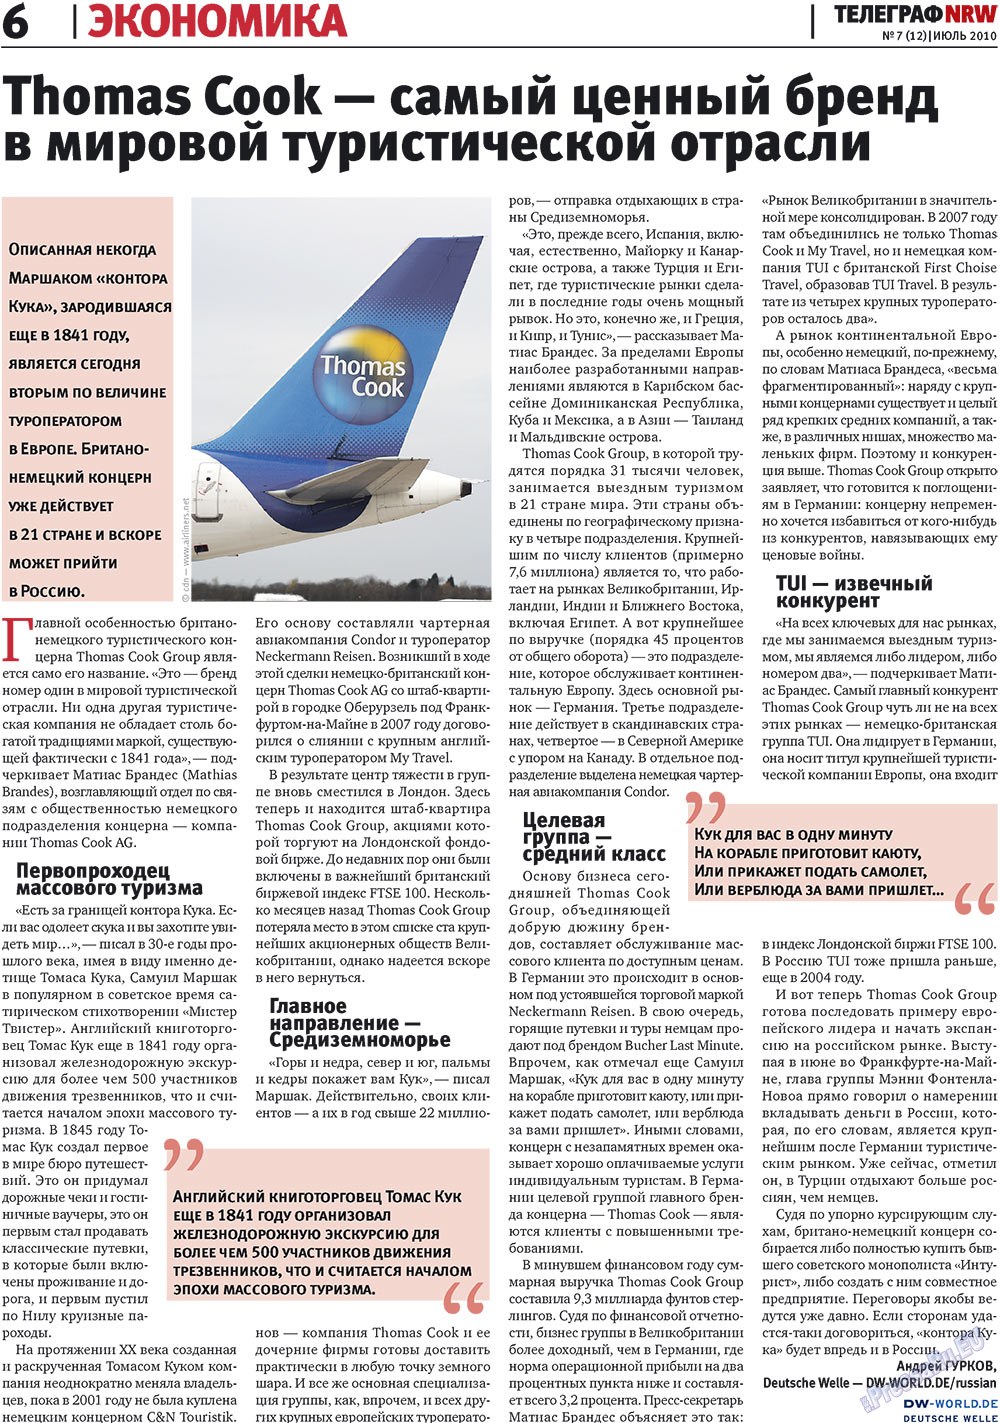 Телеграф NRW (газета). 2010 год, номер 7, стр. 6